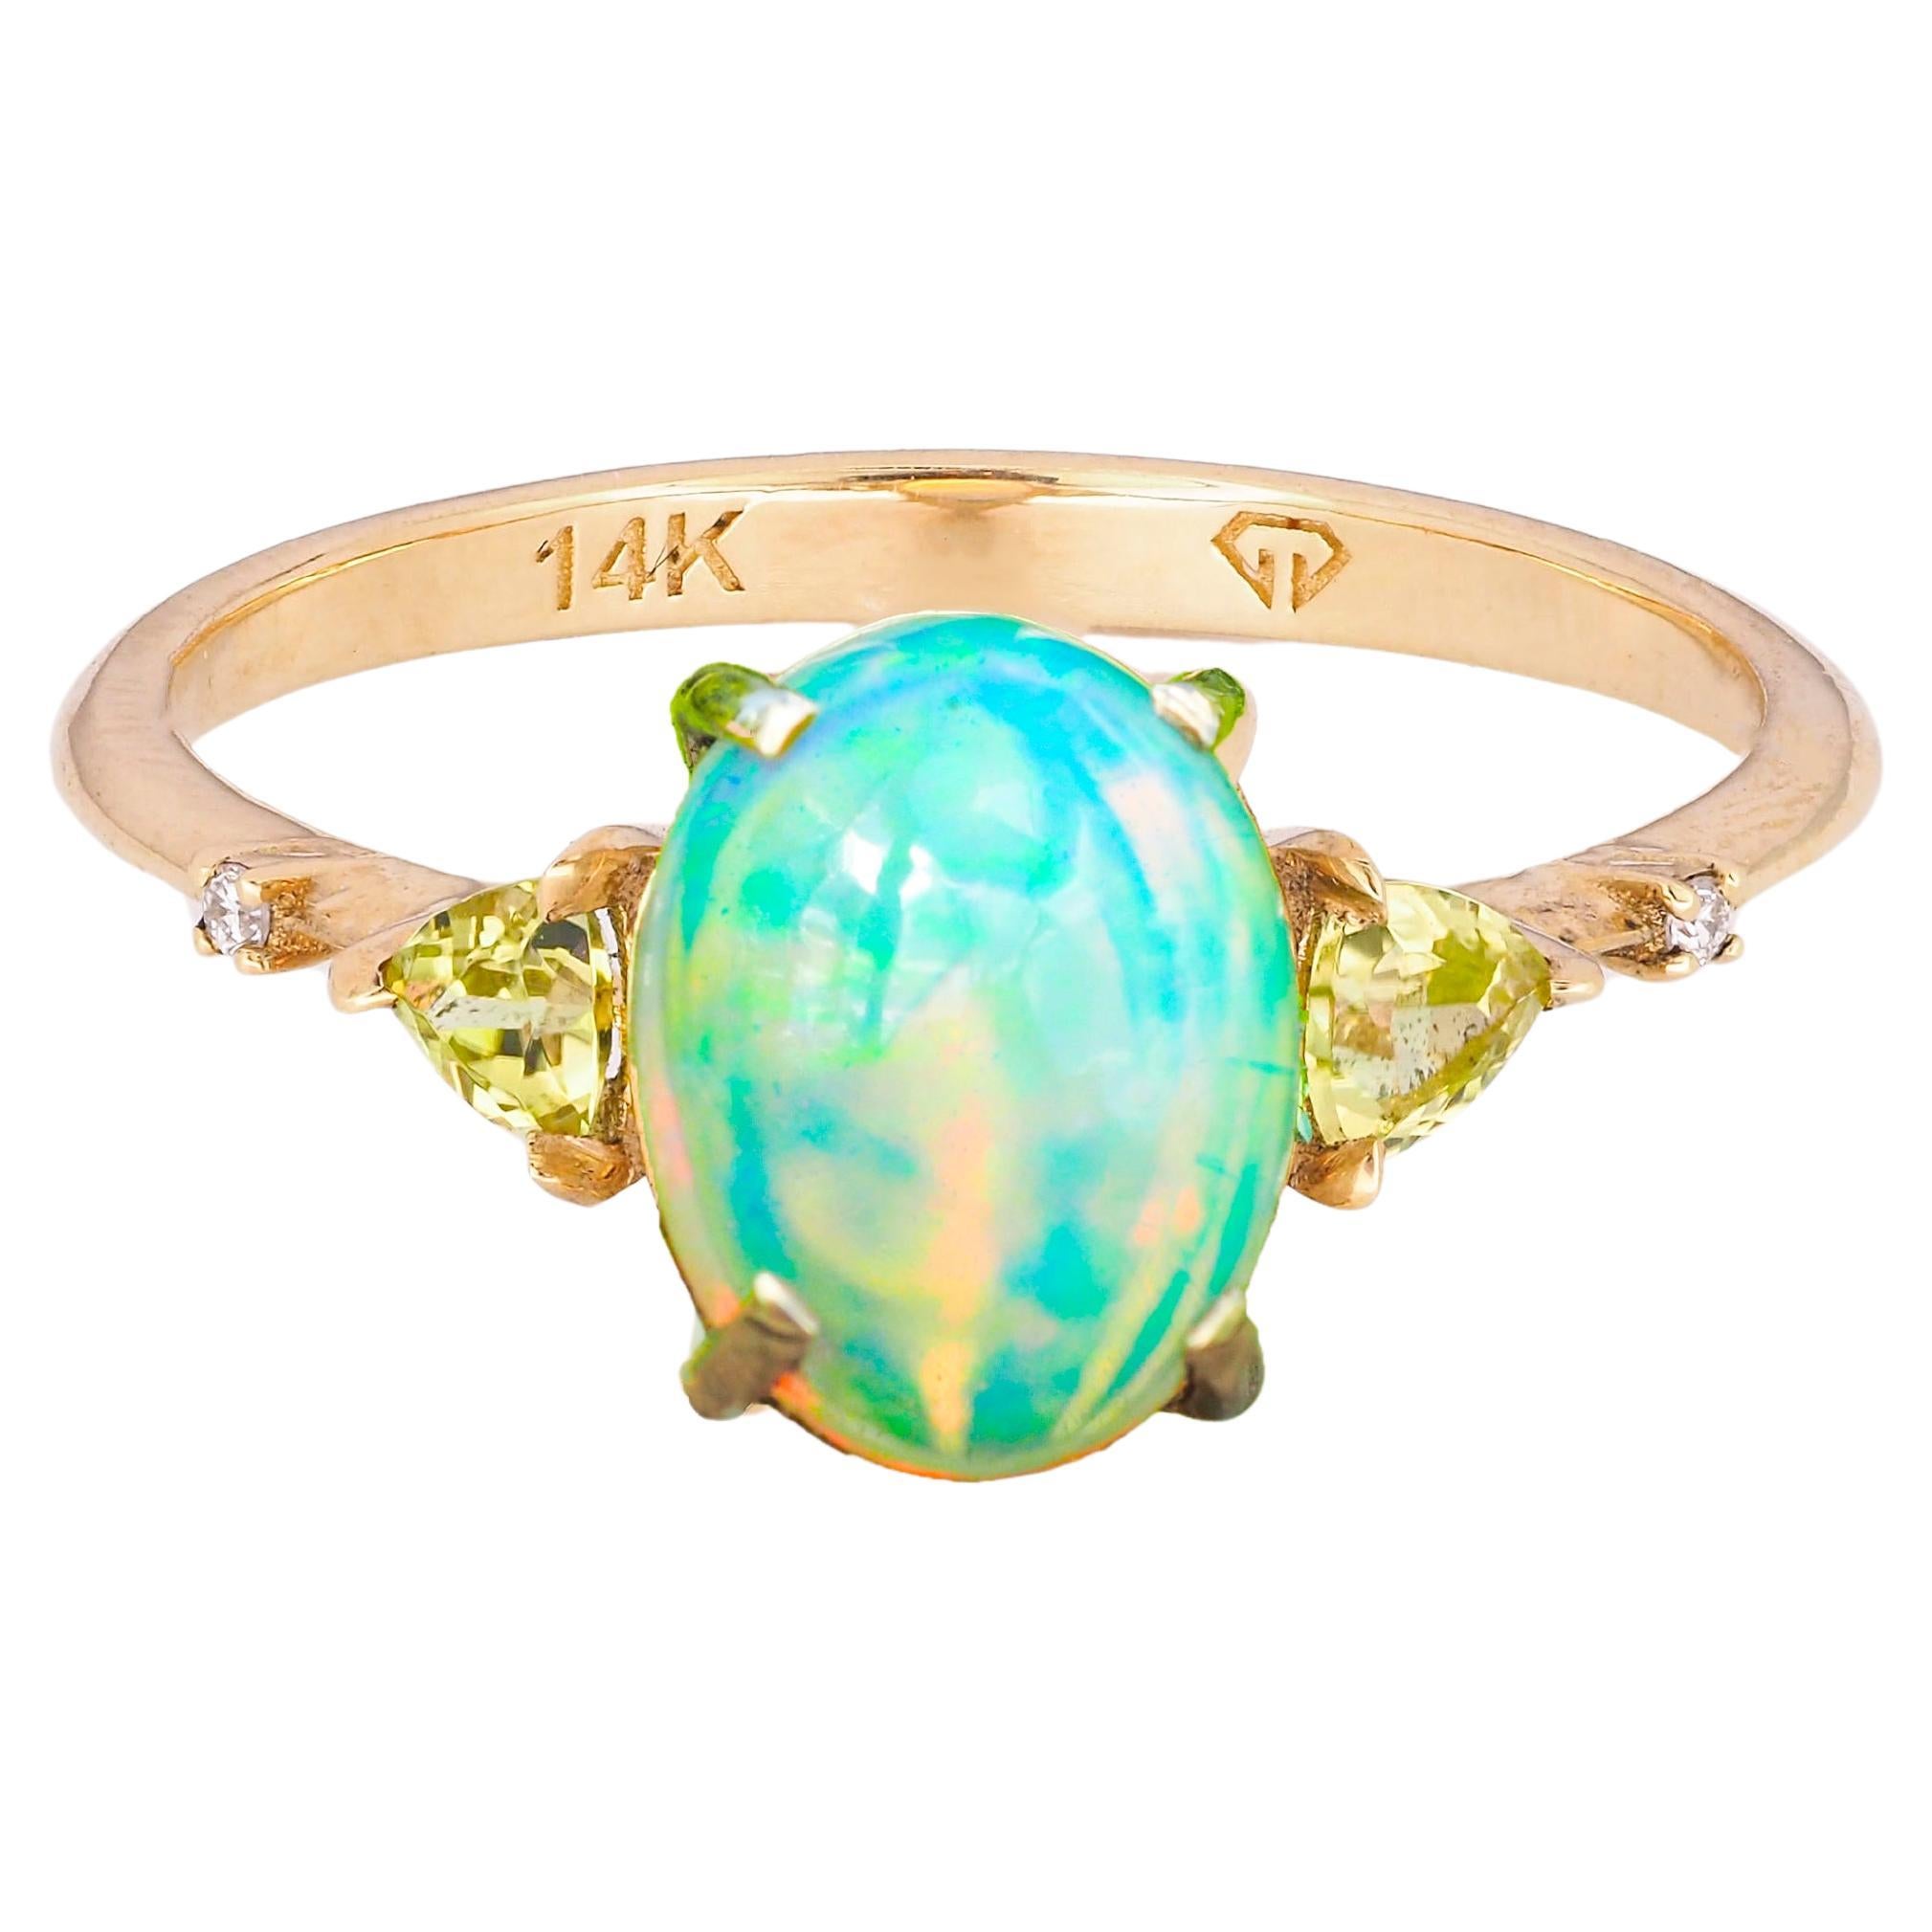 14 k gold ring with opal, peridot, diamonds. 